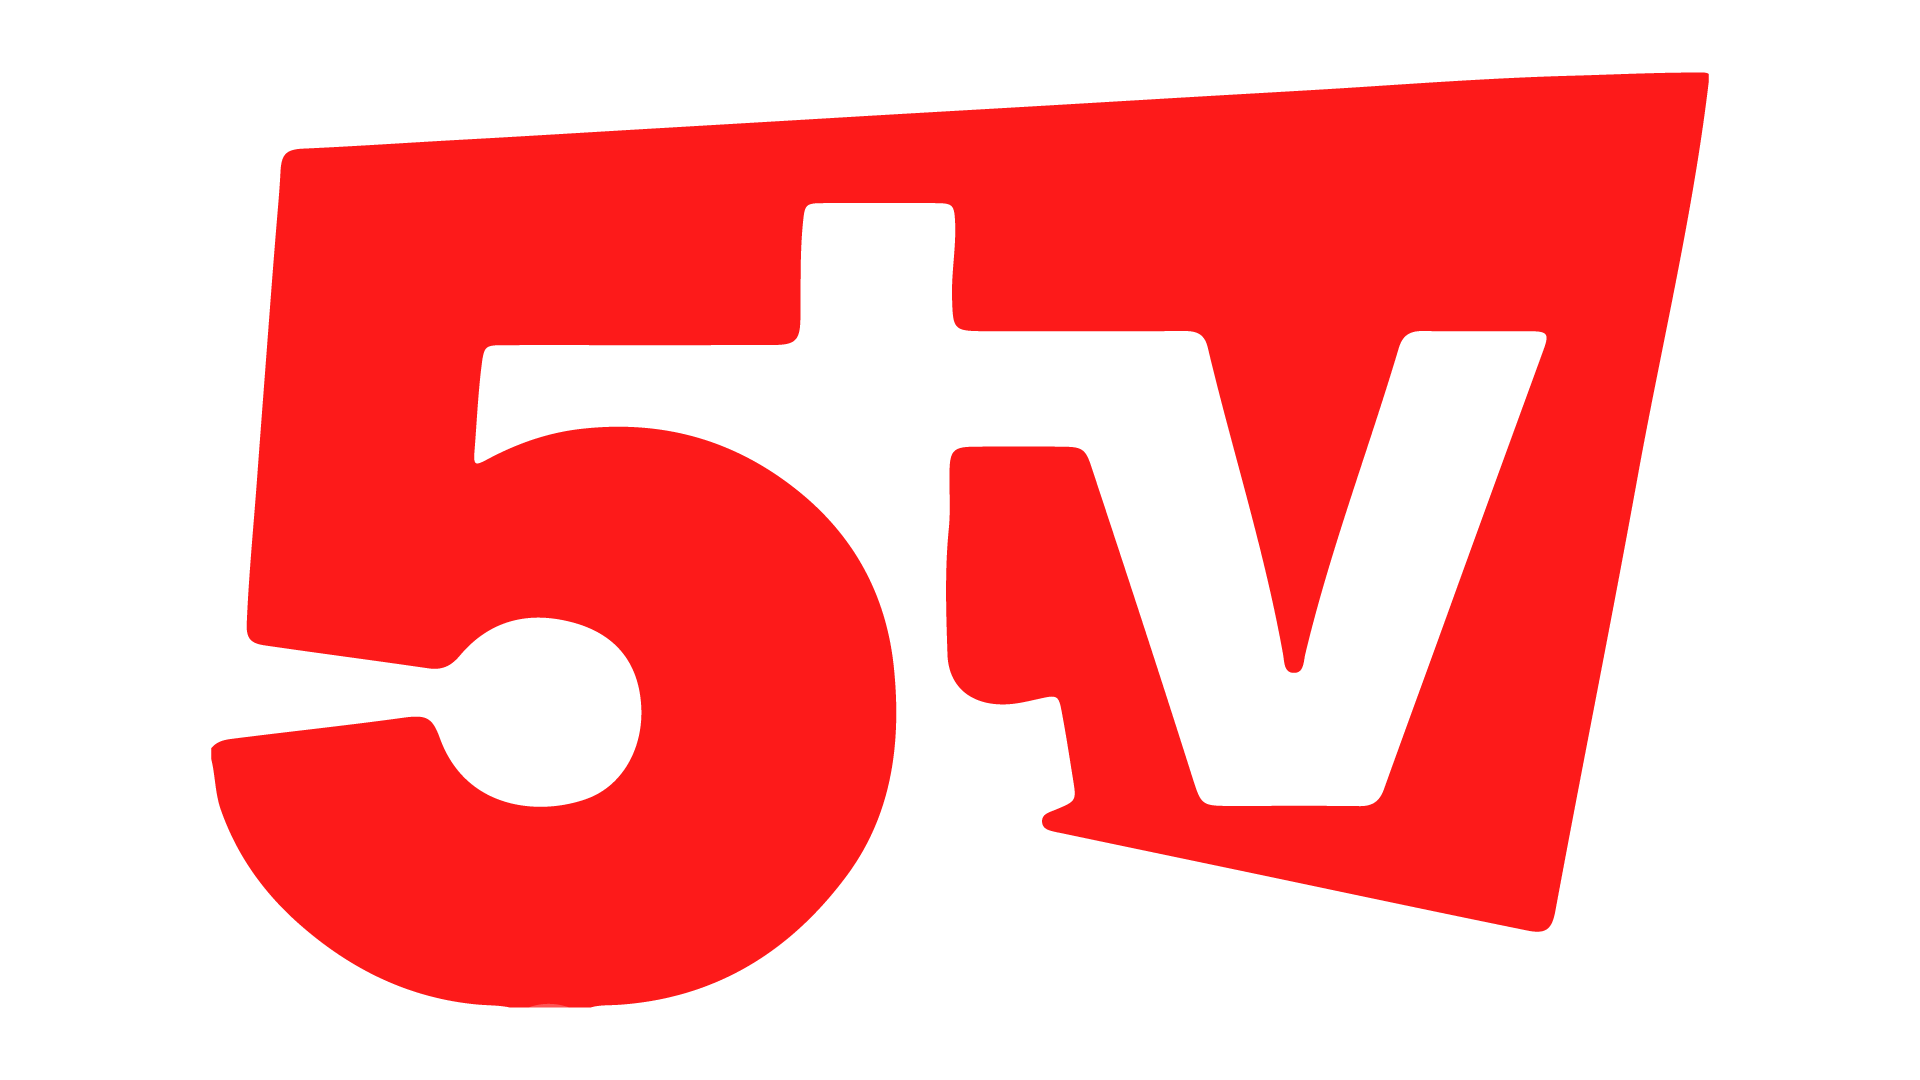 Canal 5 TV Corrientes en vivo, Online Teleame Directos TV